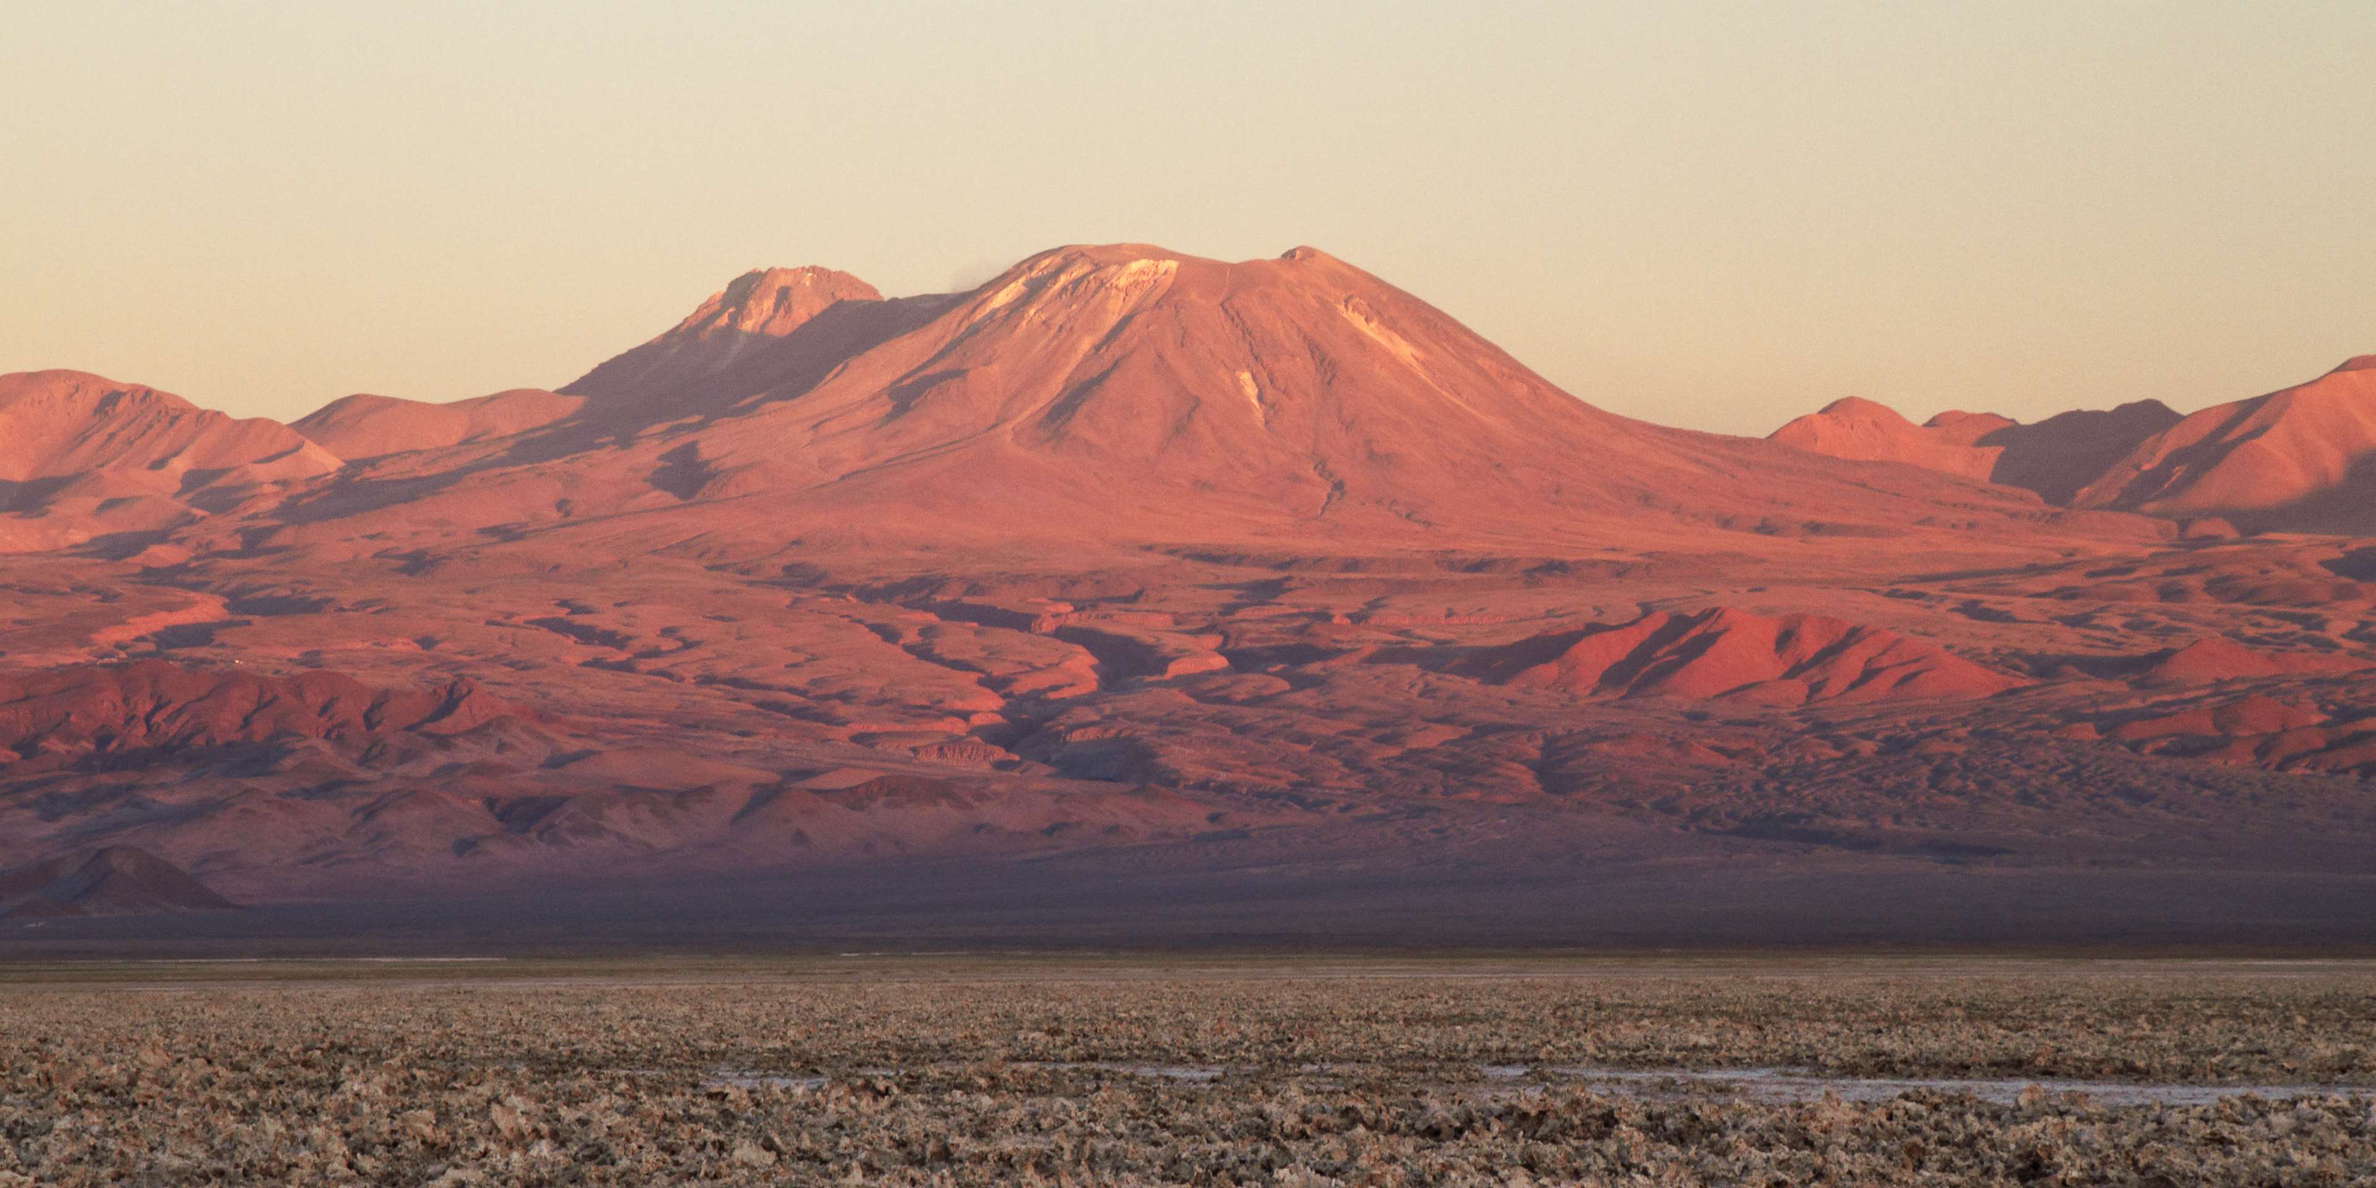 Salar de Atacama and Volcán Lascar